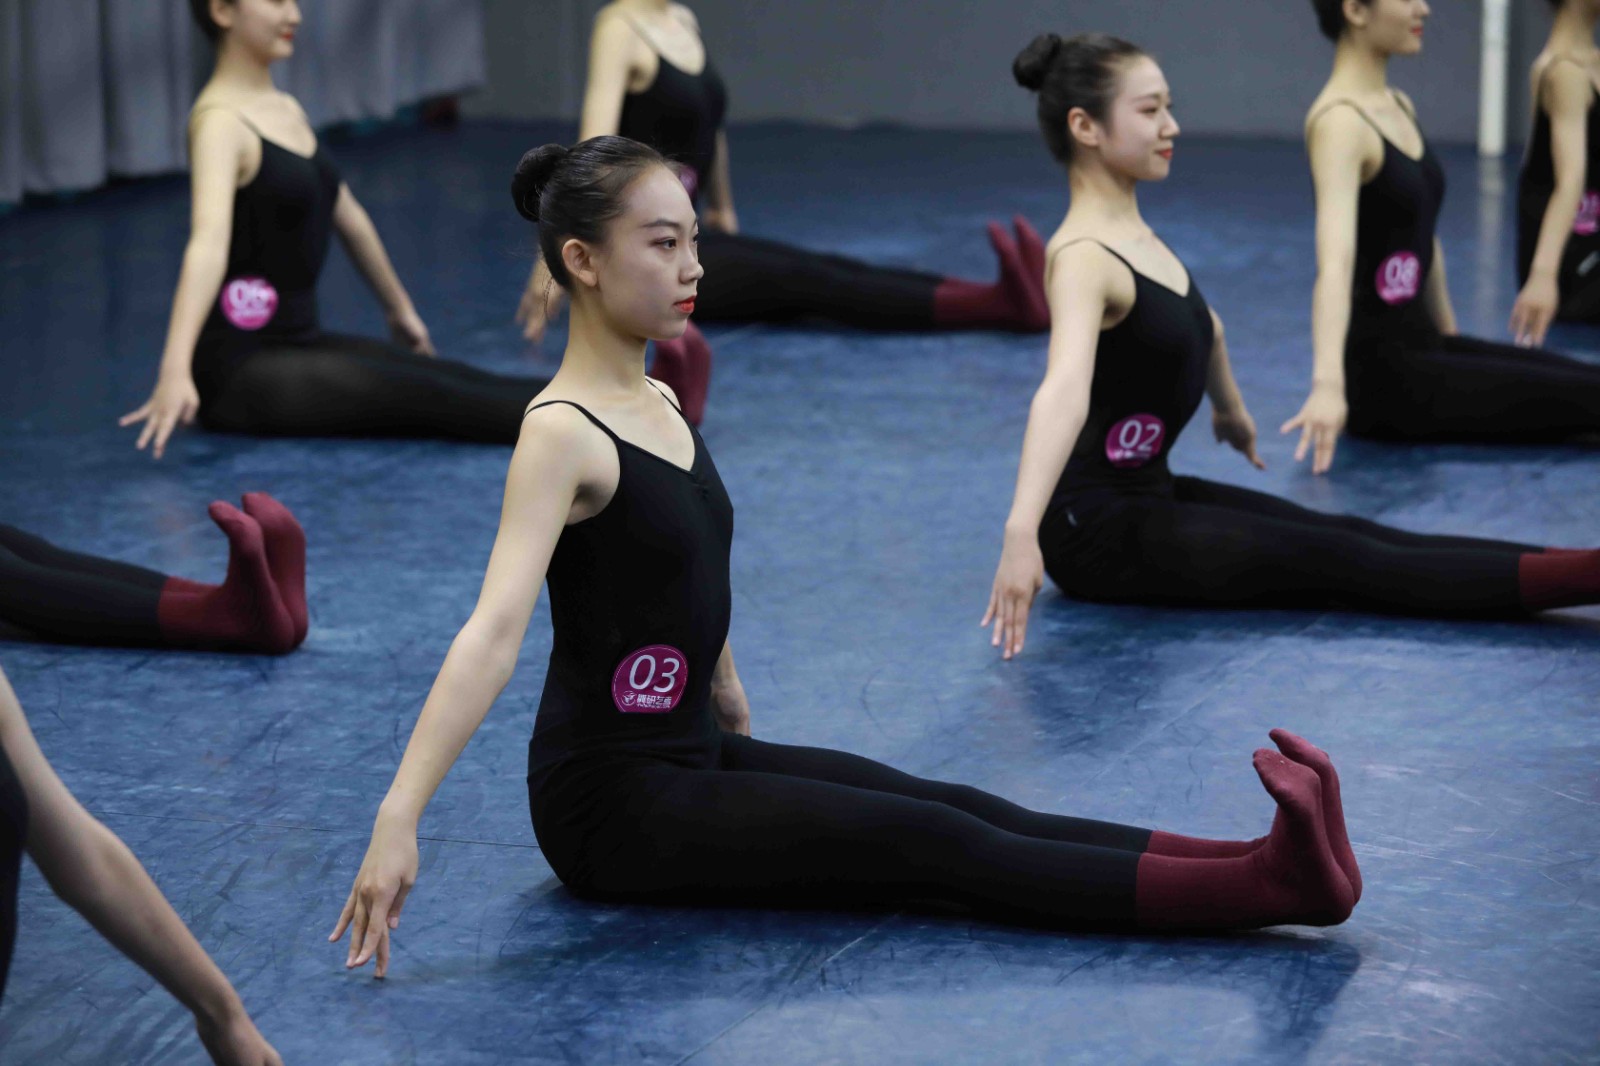 山東濱州藝考舞蹈培訓機構那家好 山東濱州藝考舞蹈機構花費大嗎 要多少錢?